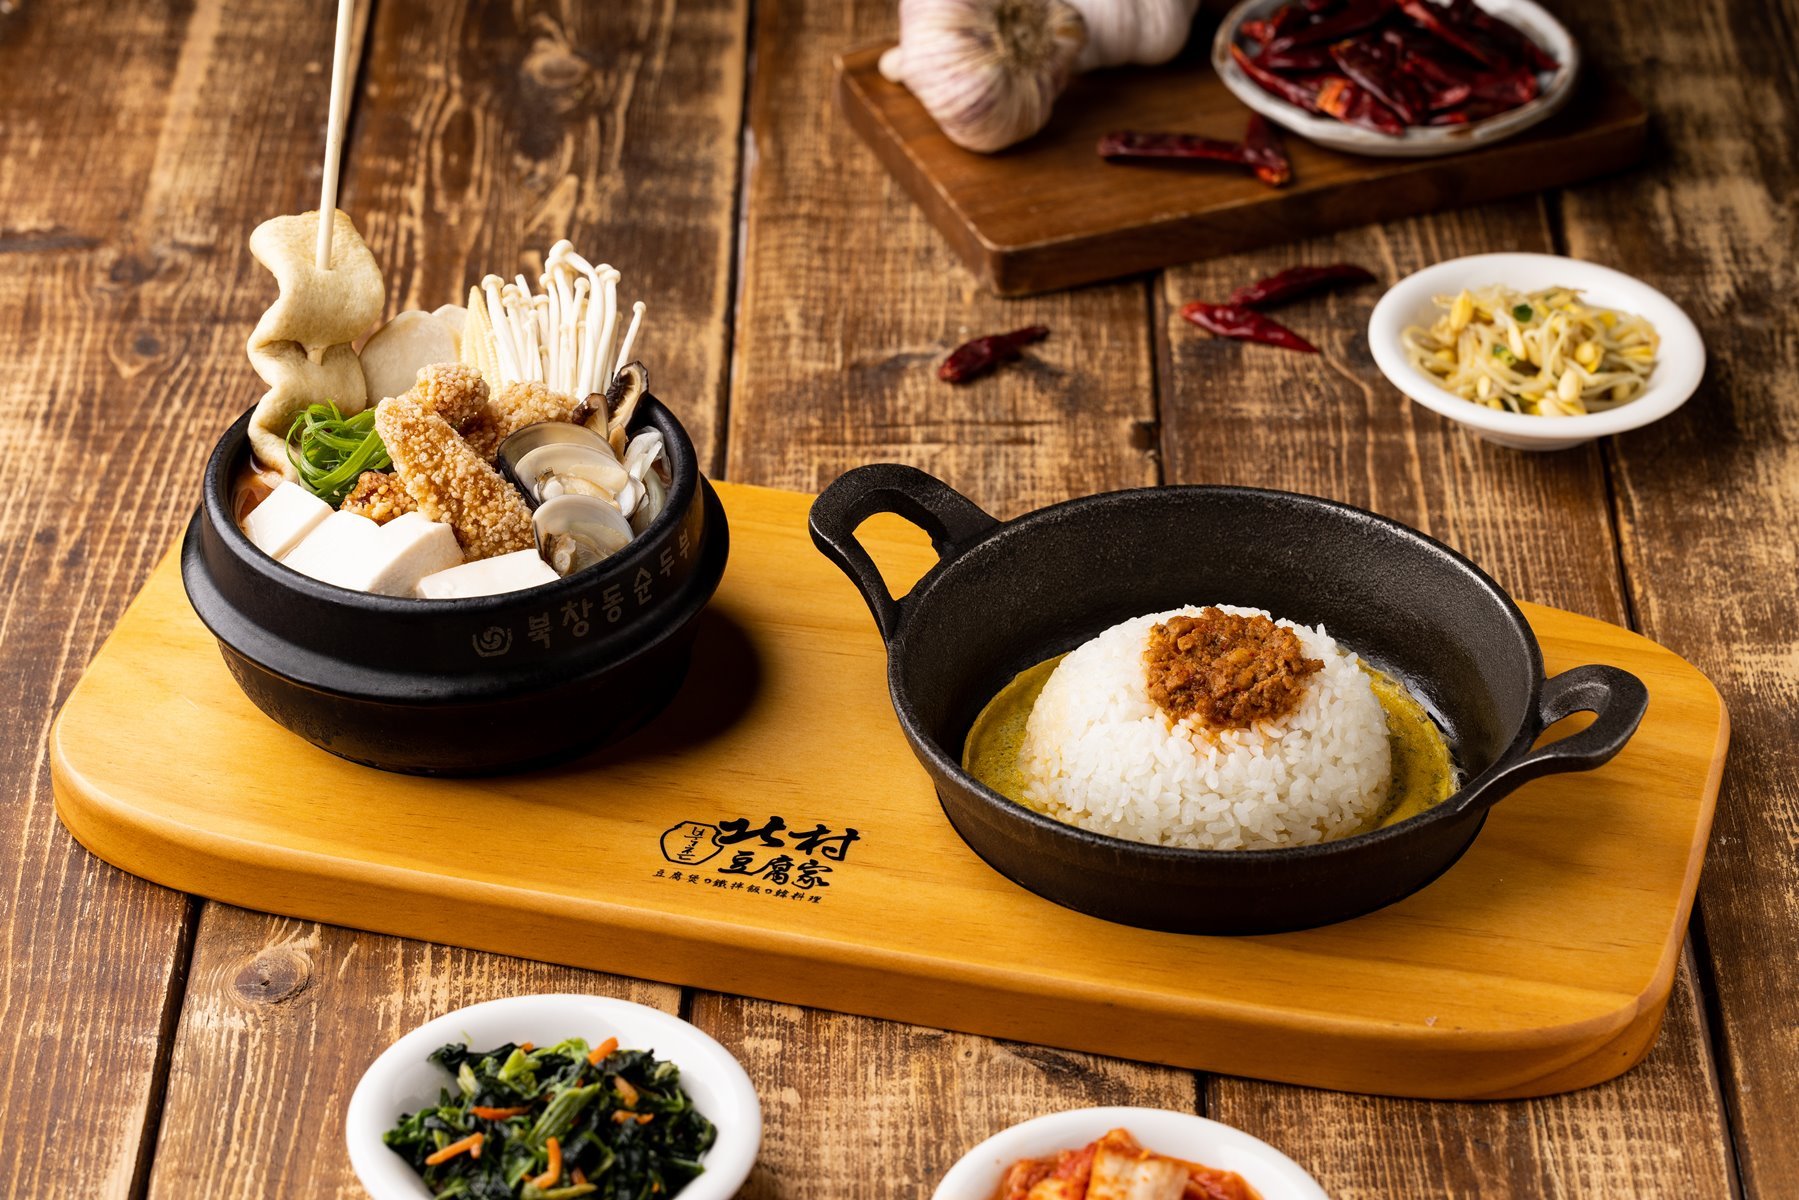 北村豆腐家「韓系超鮮海味」全新料理 萬聖節變裝享4道新菜